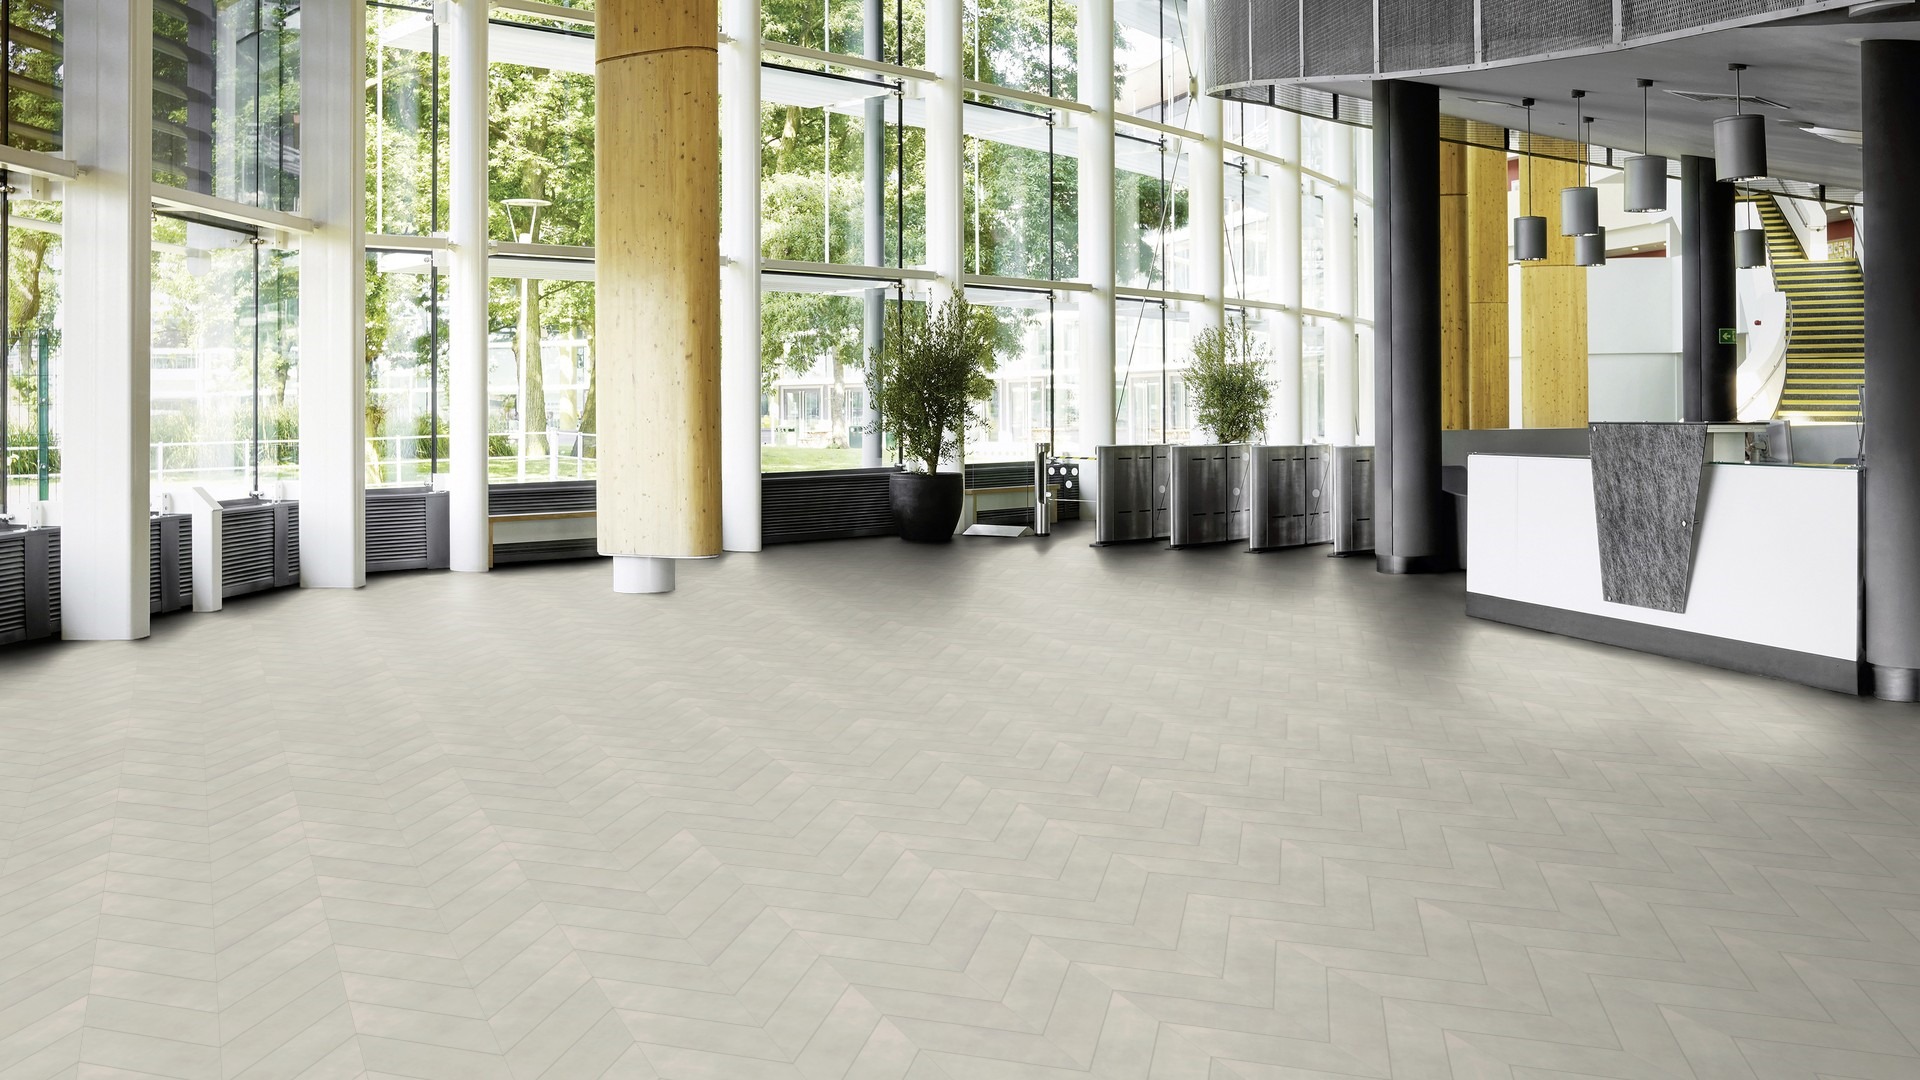 The Pleat 3 design of Tyne Concrete luxury vinyl tile by Amtico